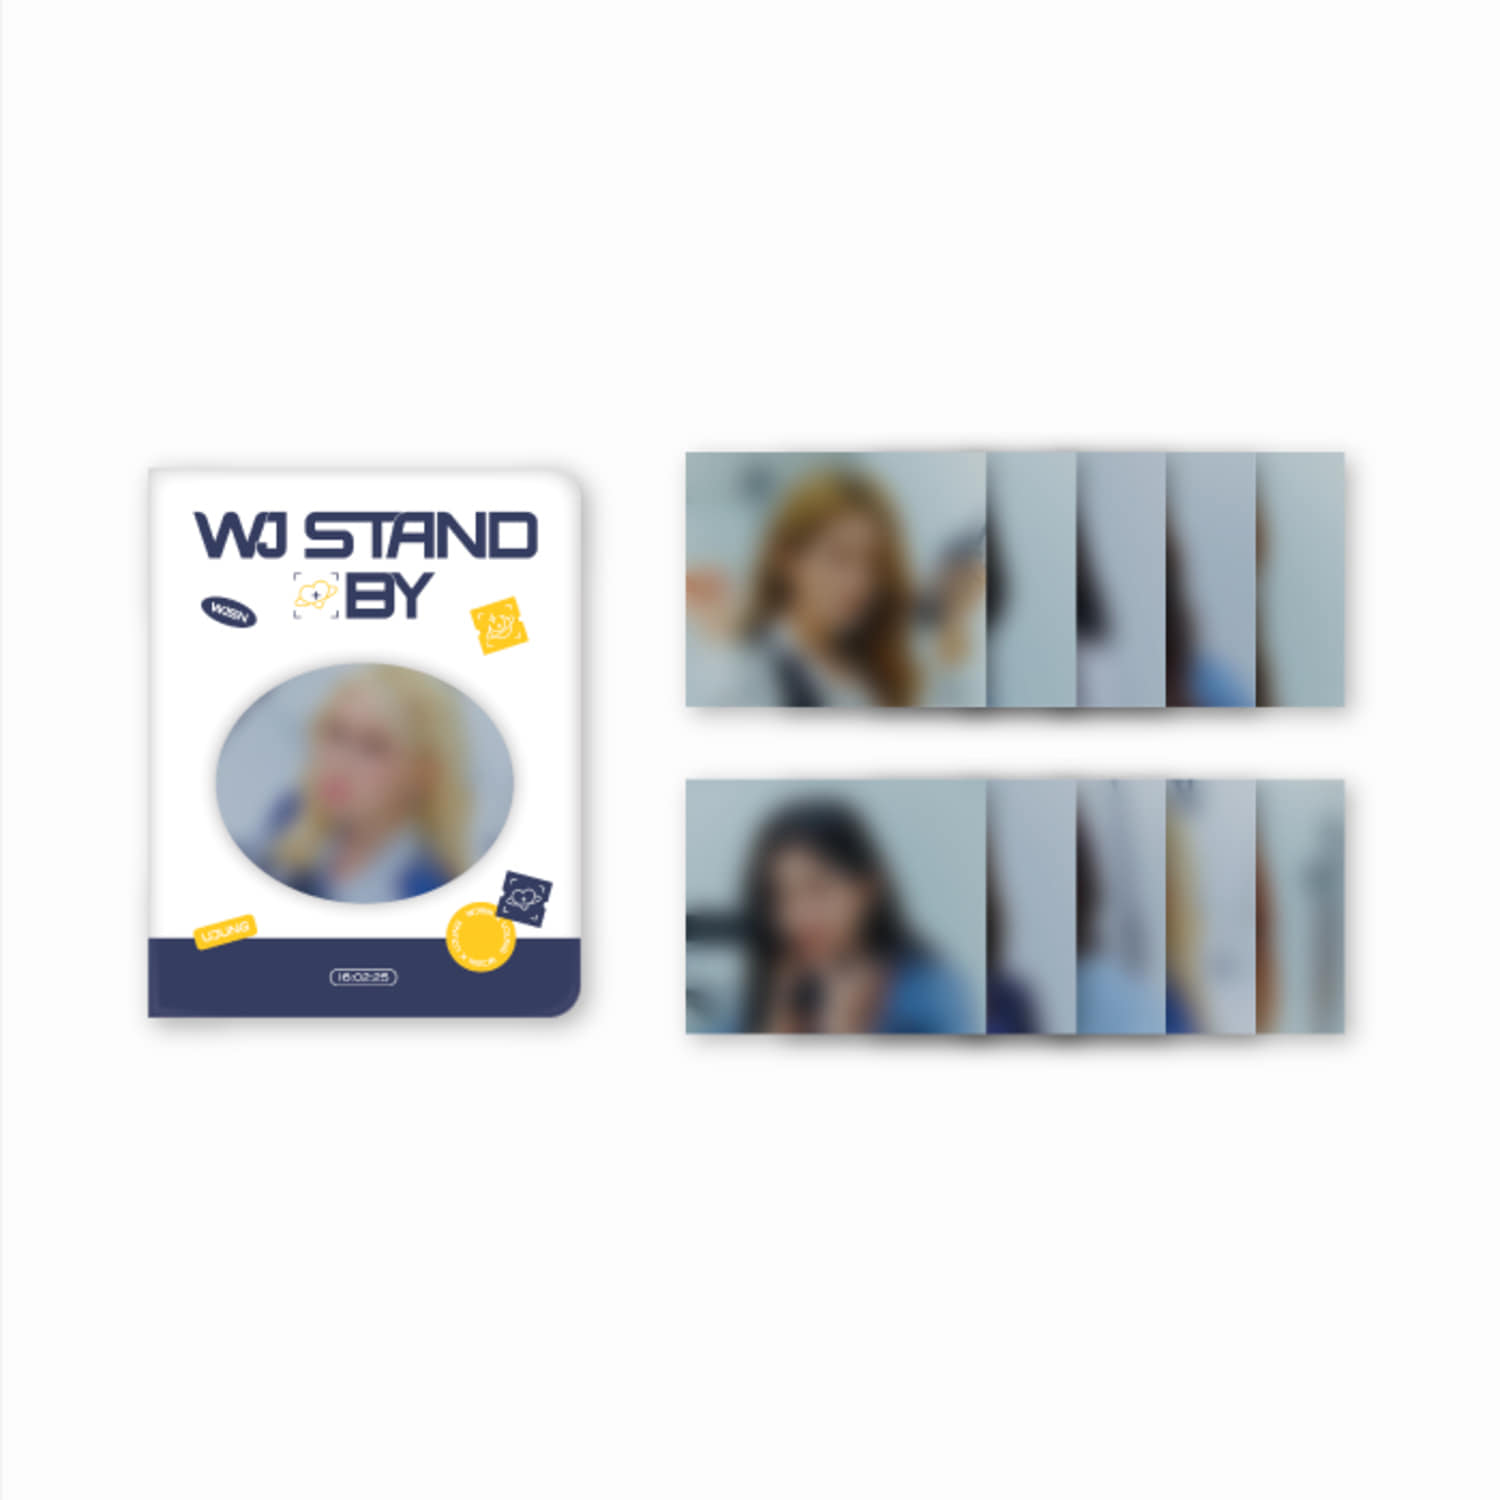 우주소녀(WJSN)  [WJ STAND BY] Official MD - 포토카드 바인더 PHOTOCARD BINDER